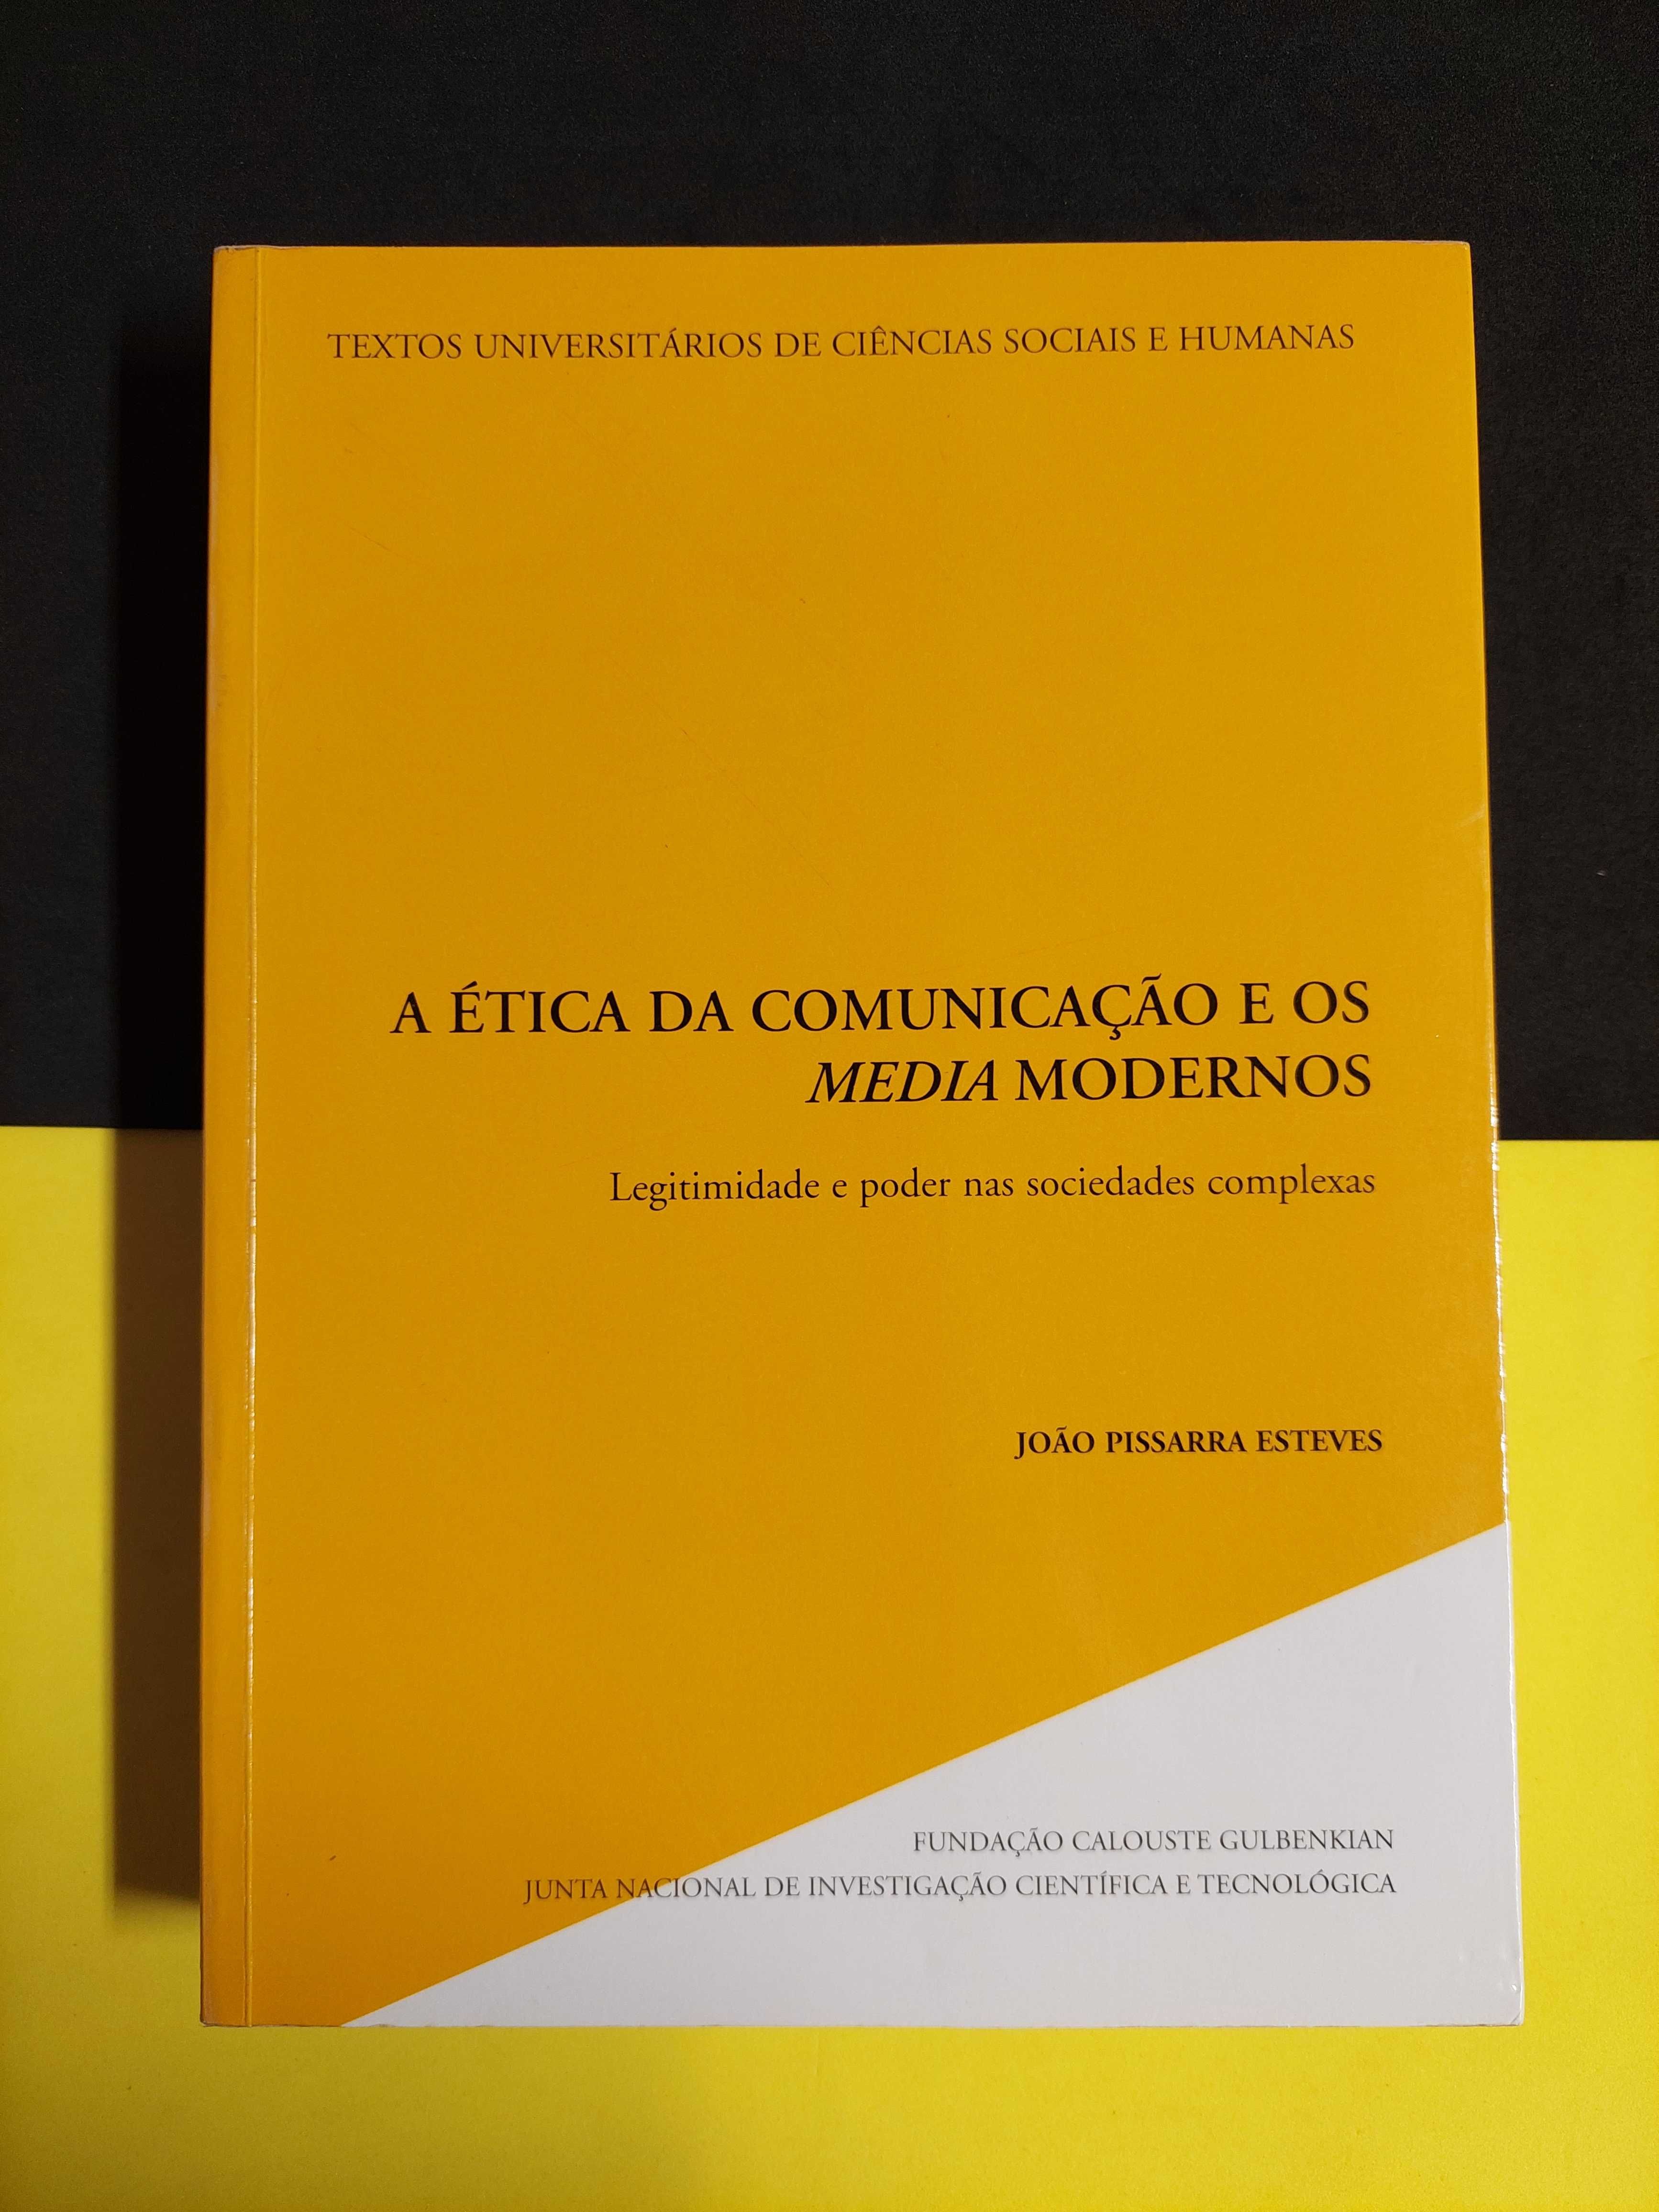 João Pissarra Esteves - A ética da comunicação e os media modernos